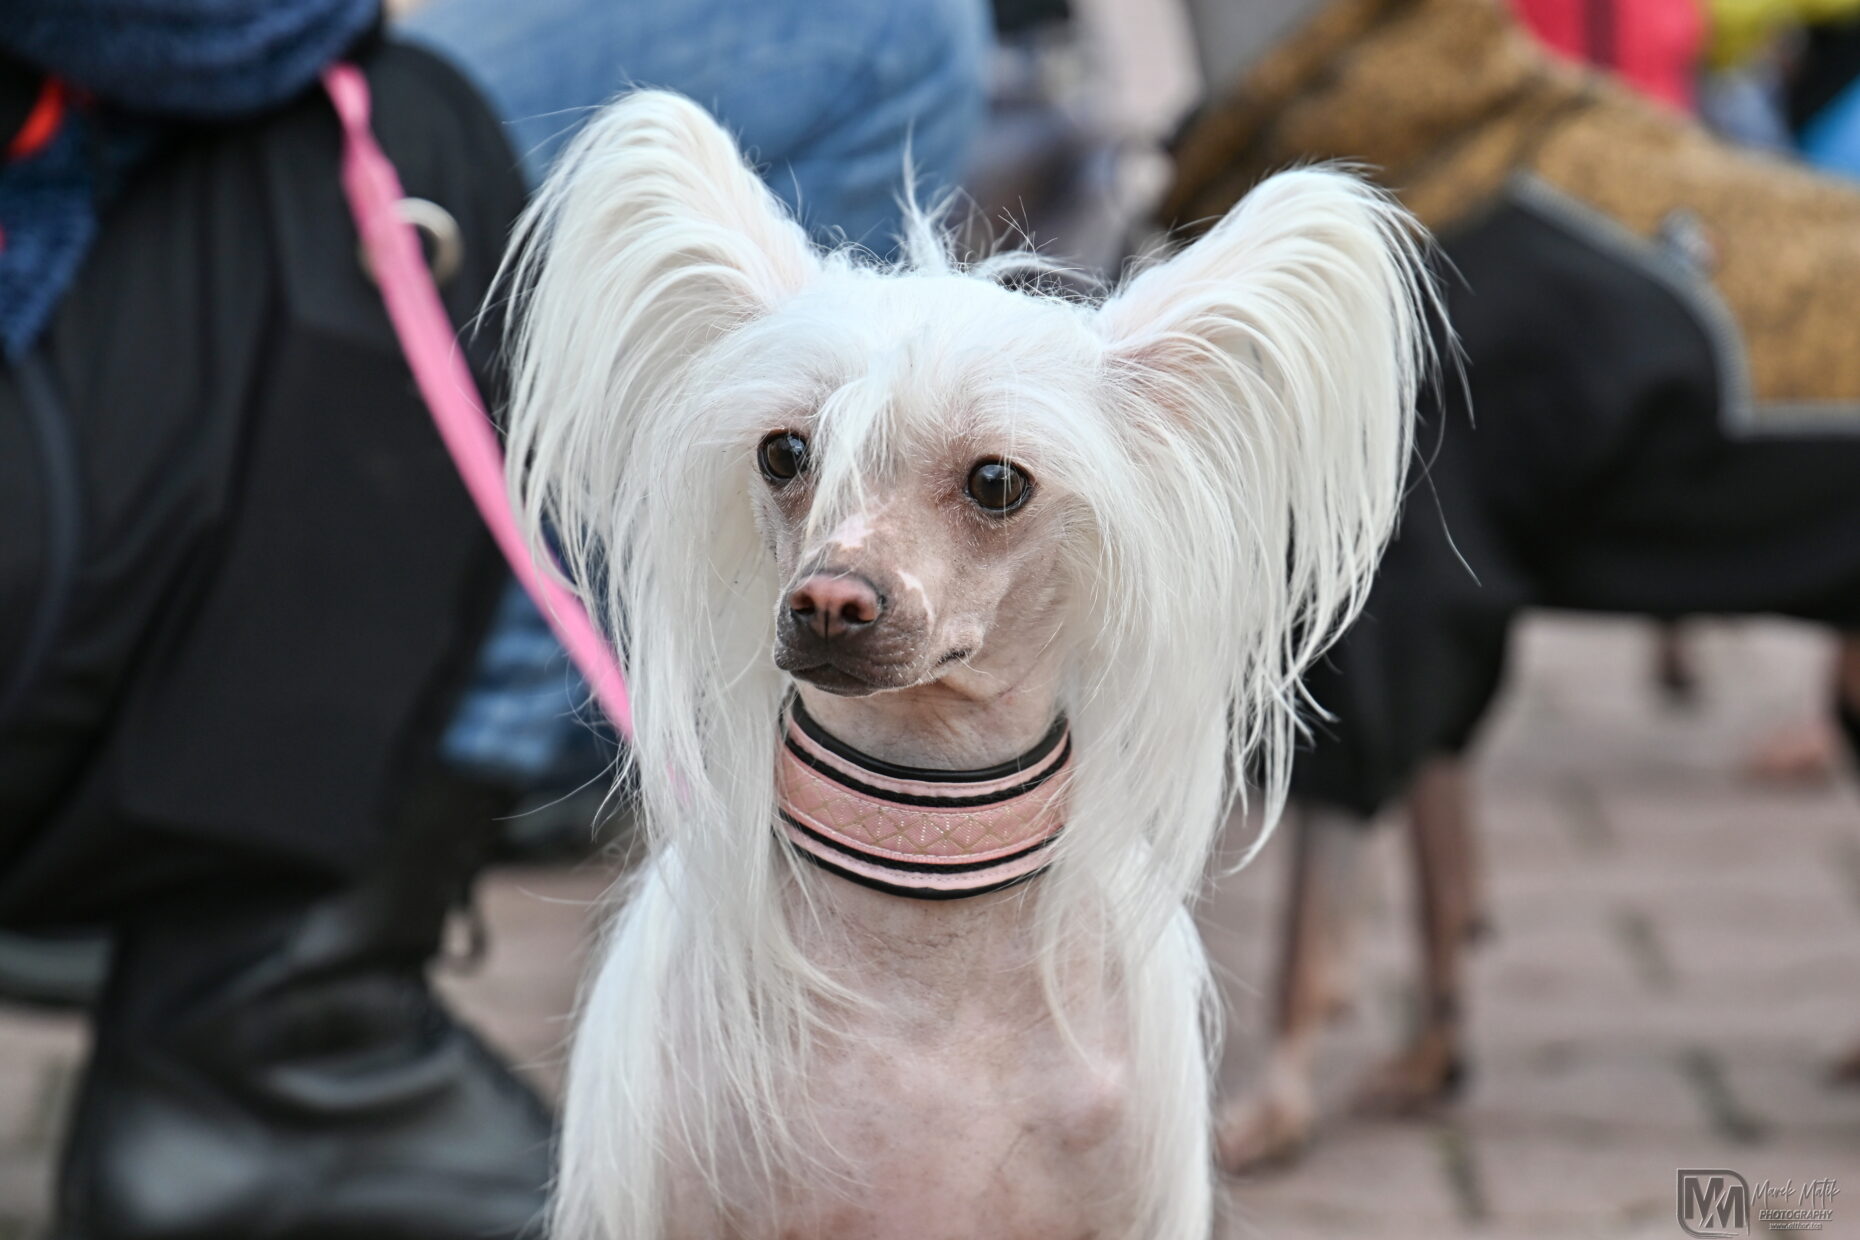 I love naked Procházky bezsrstých plemen psů americký bezsrstý teriér peruánský naháč mexický naháč čínský chocholatý pes